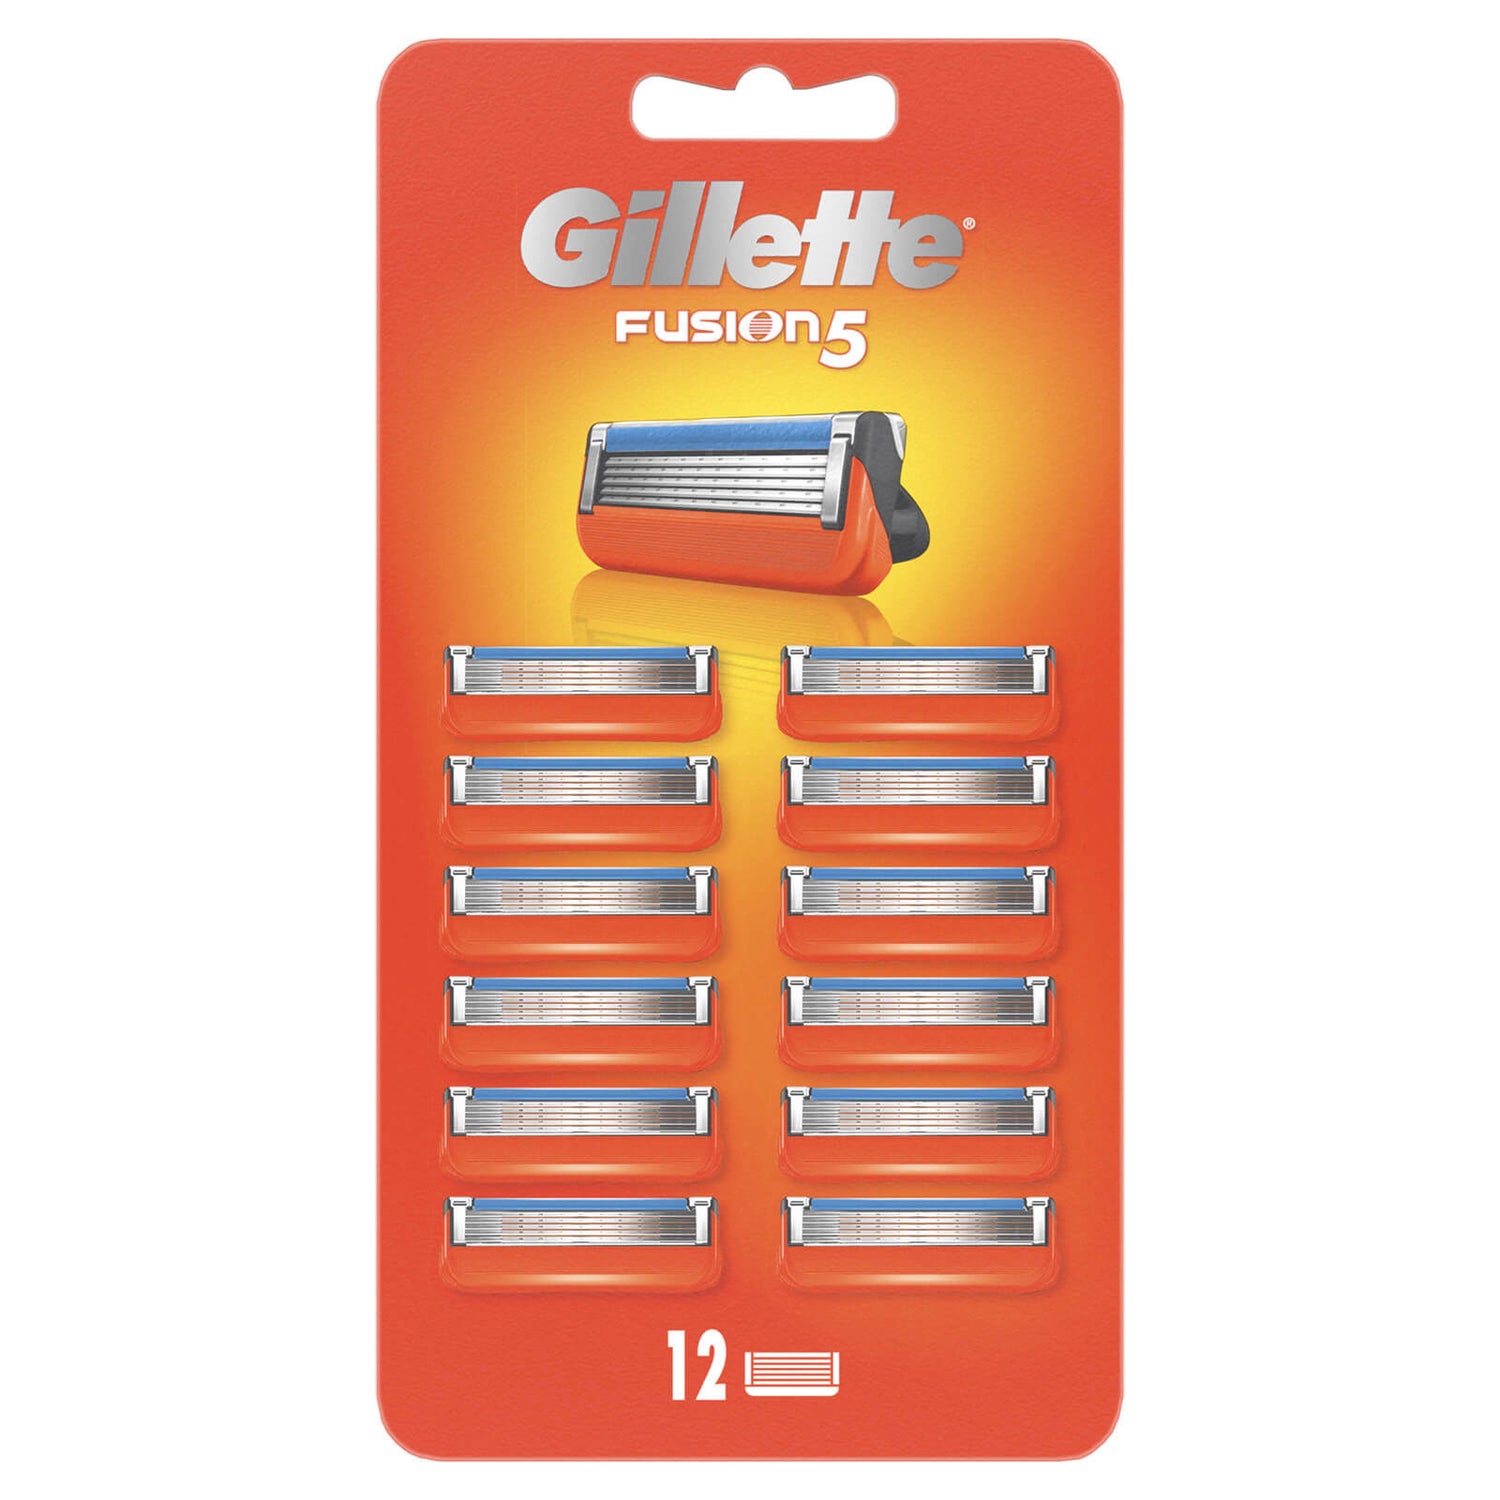 Gillette Fusion5 Razor Blade Refills